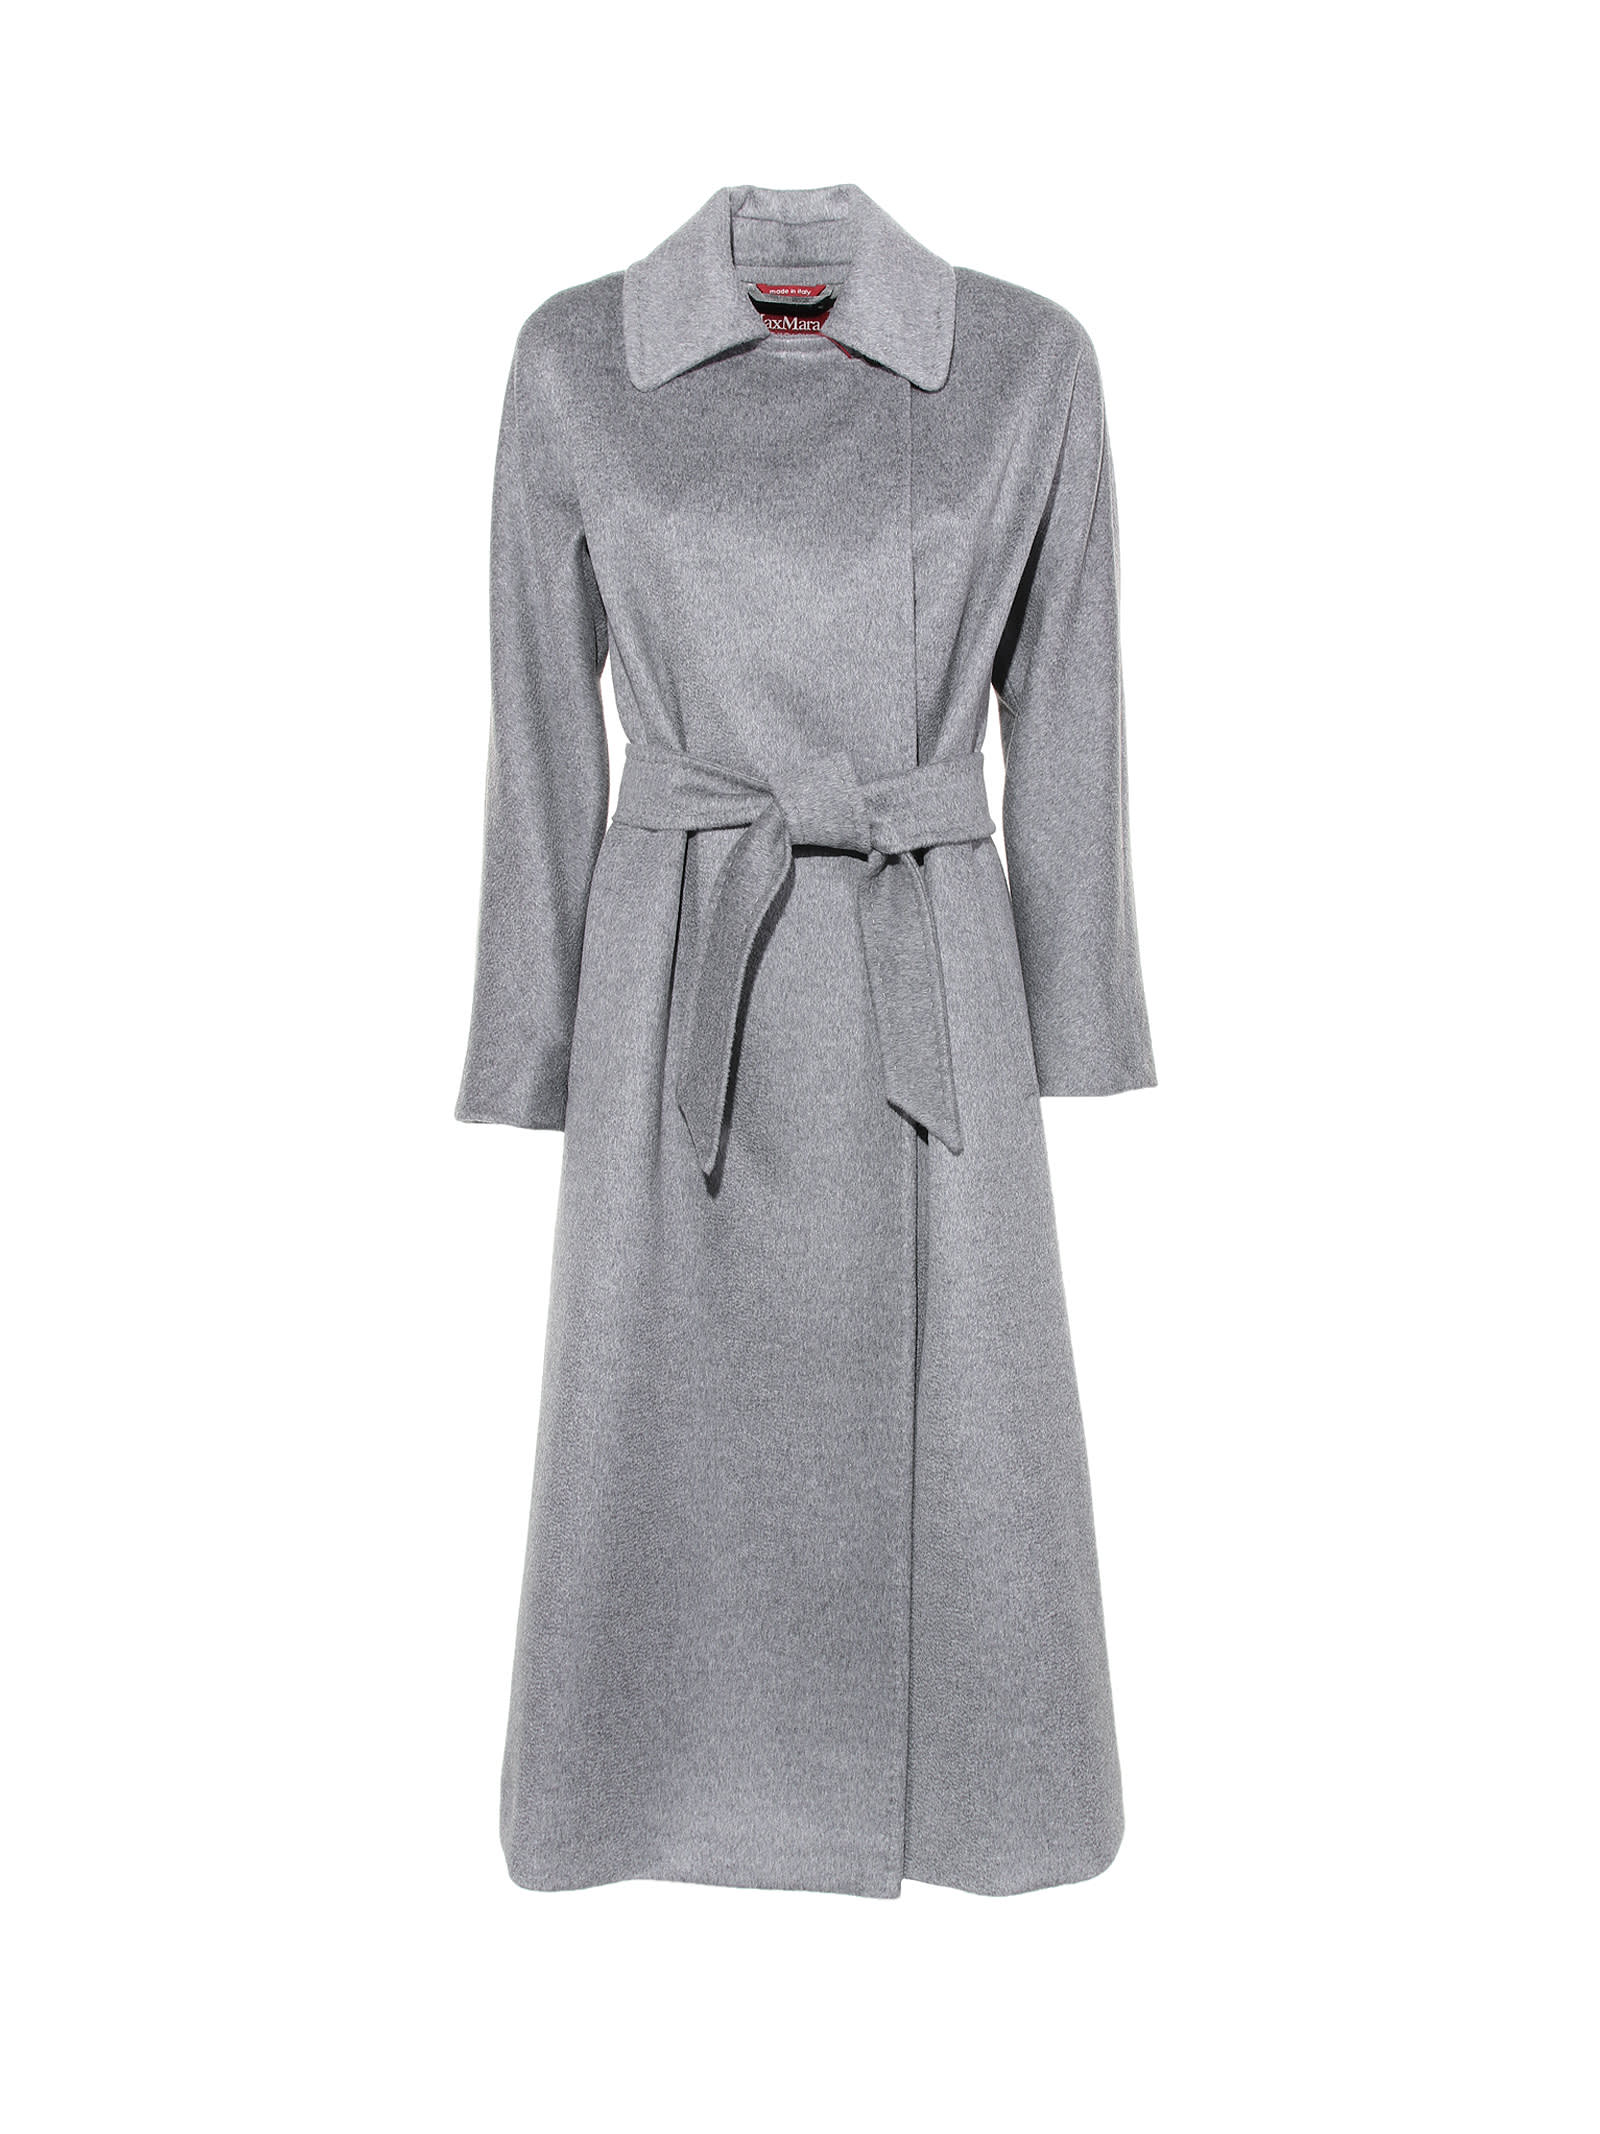 Max Mara Coat In Grey Wool